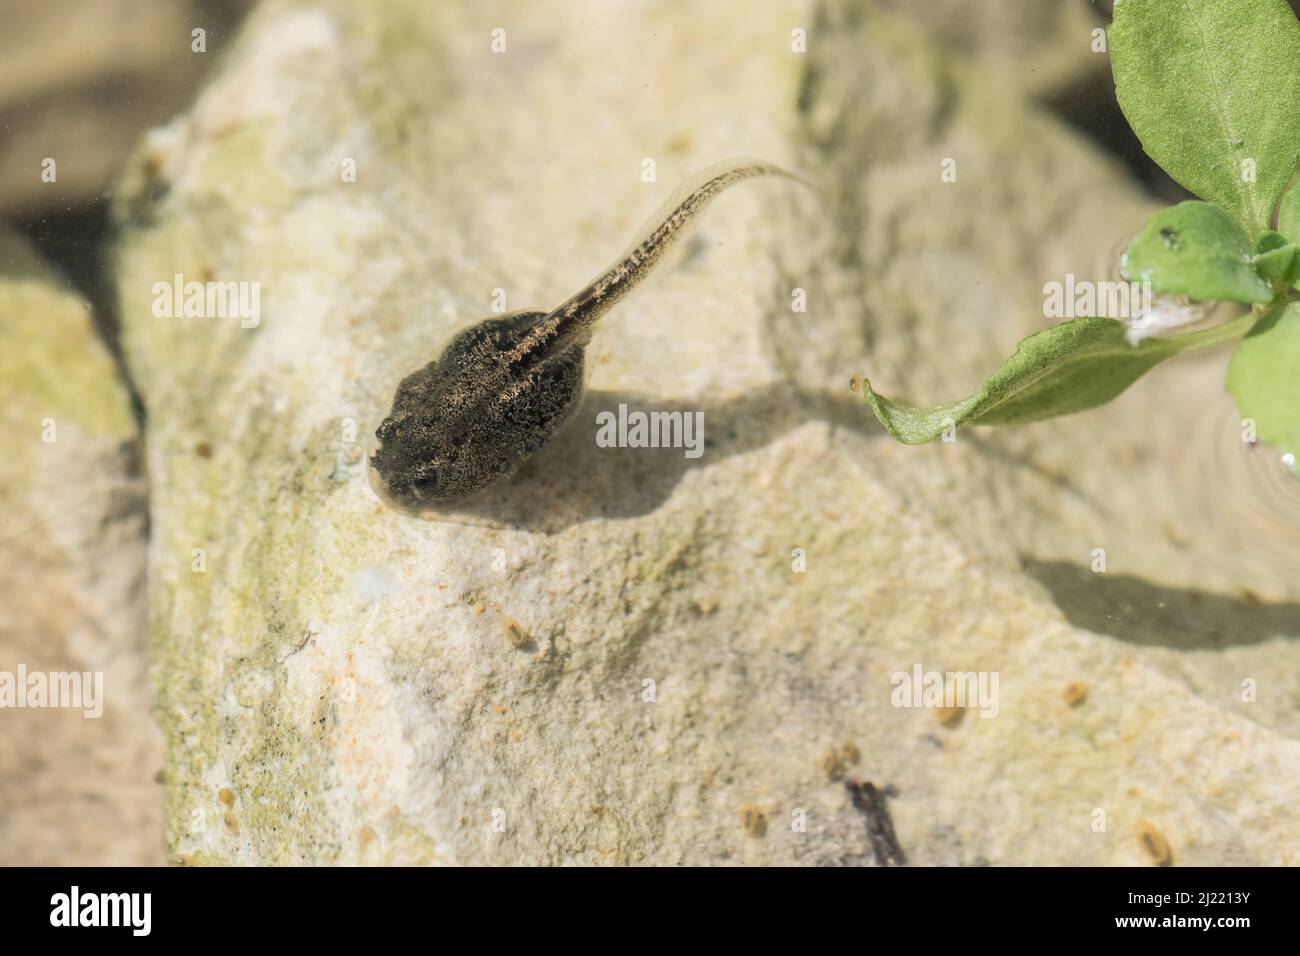 Un tadpolo di una rana dipinta nel Mediterraneo, Discoglossus pictus, che si alimenta su una roccia in un laghetto poco profondo di acqua dolce nella campagna maltese. Foto Stock